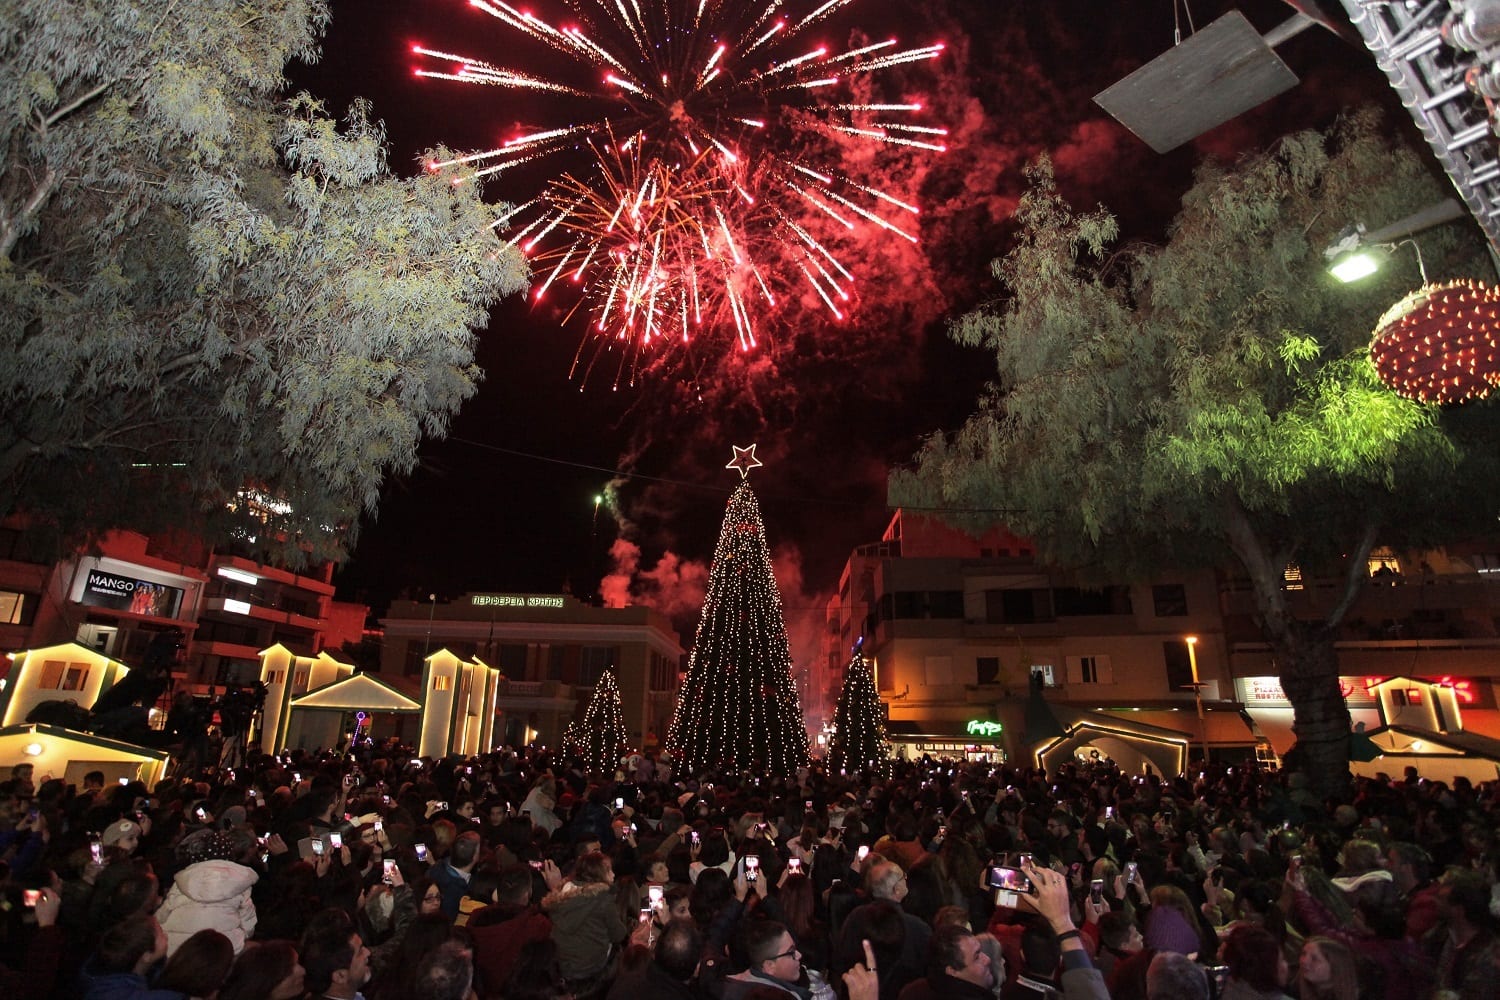 Ηράκλειο: Οι εκδηλώσεις στο «Χριστουγεννιάτικο Κάστρο» την Πέμπτη 3 Ιανουαρίου . Συνεχίζονται οι εκδηλώσεις μέσα στο «Χριστουγεννιάτικο Κάστρο – Ταξίδι .....